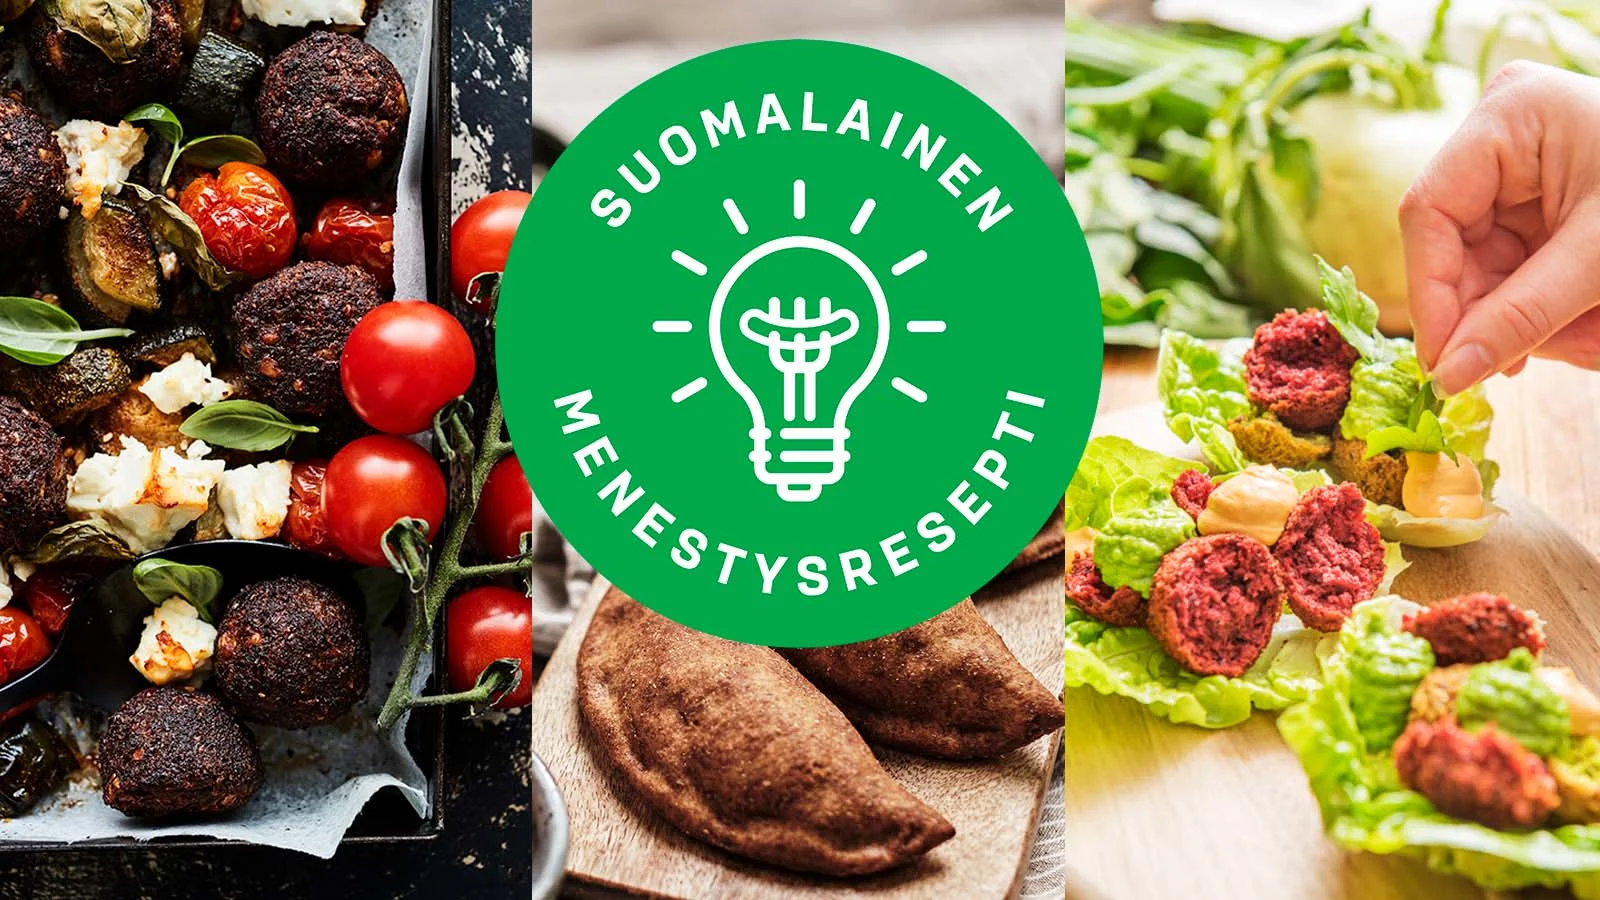 Neljässä kuukaudessa jo puoli miljoonaa Falleroa myyty – Suomalainen  menestysresepti -kilpailu on ruoka-alan hittitehdas - S-ryhmä